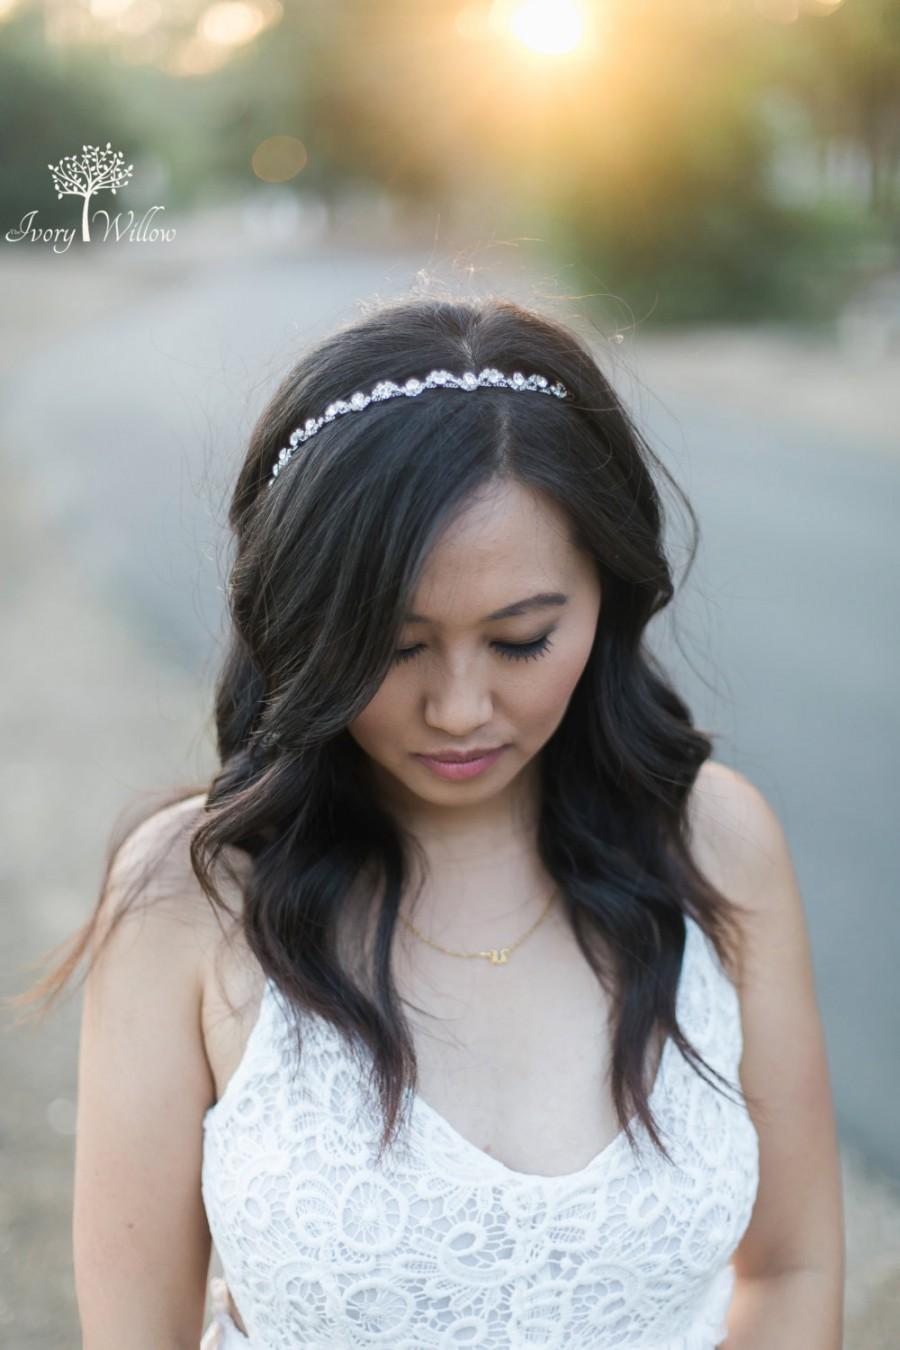 Mariage - Crystal Wedding Headband - Bridal Headband - Silver Tie back Headband - Photo Prop - Wedding Headpiece - Bridal Headpiece - Bridesmaid